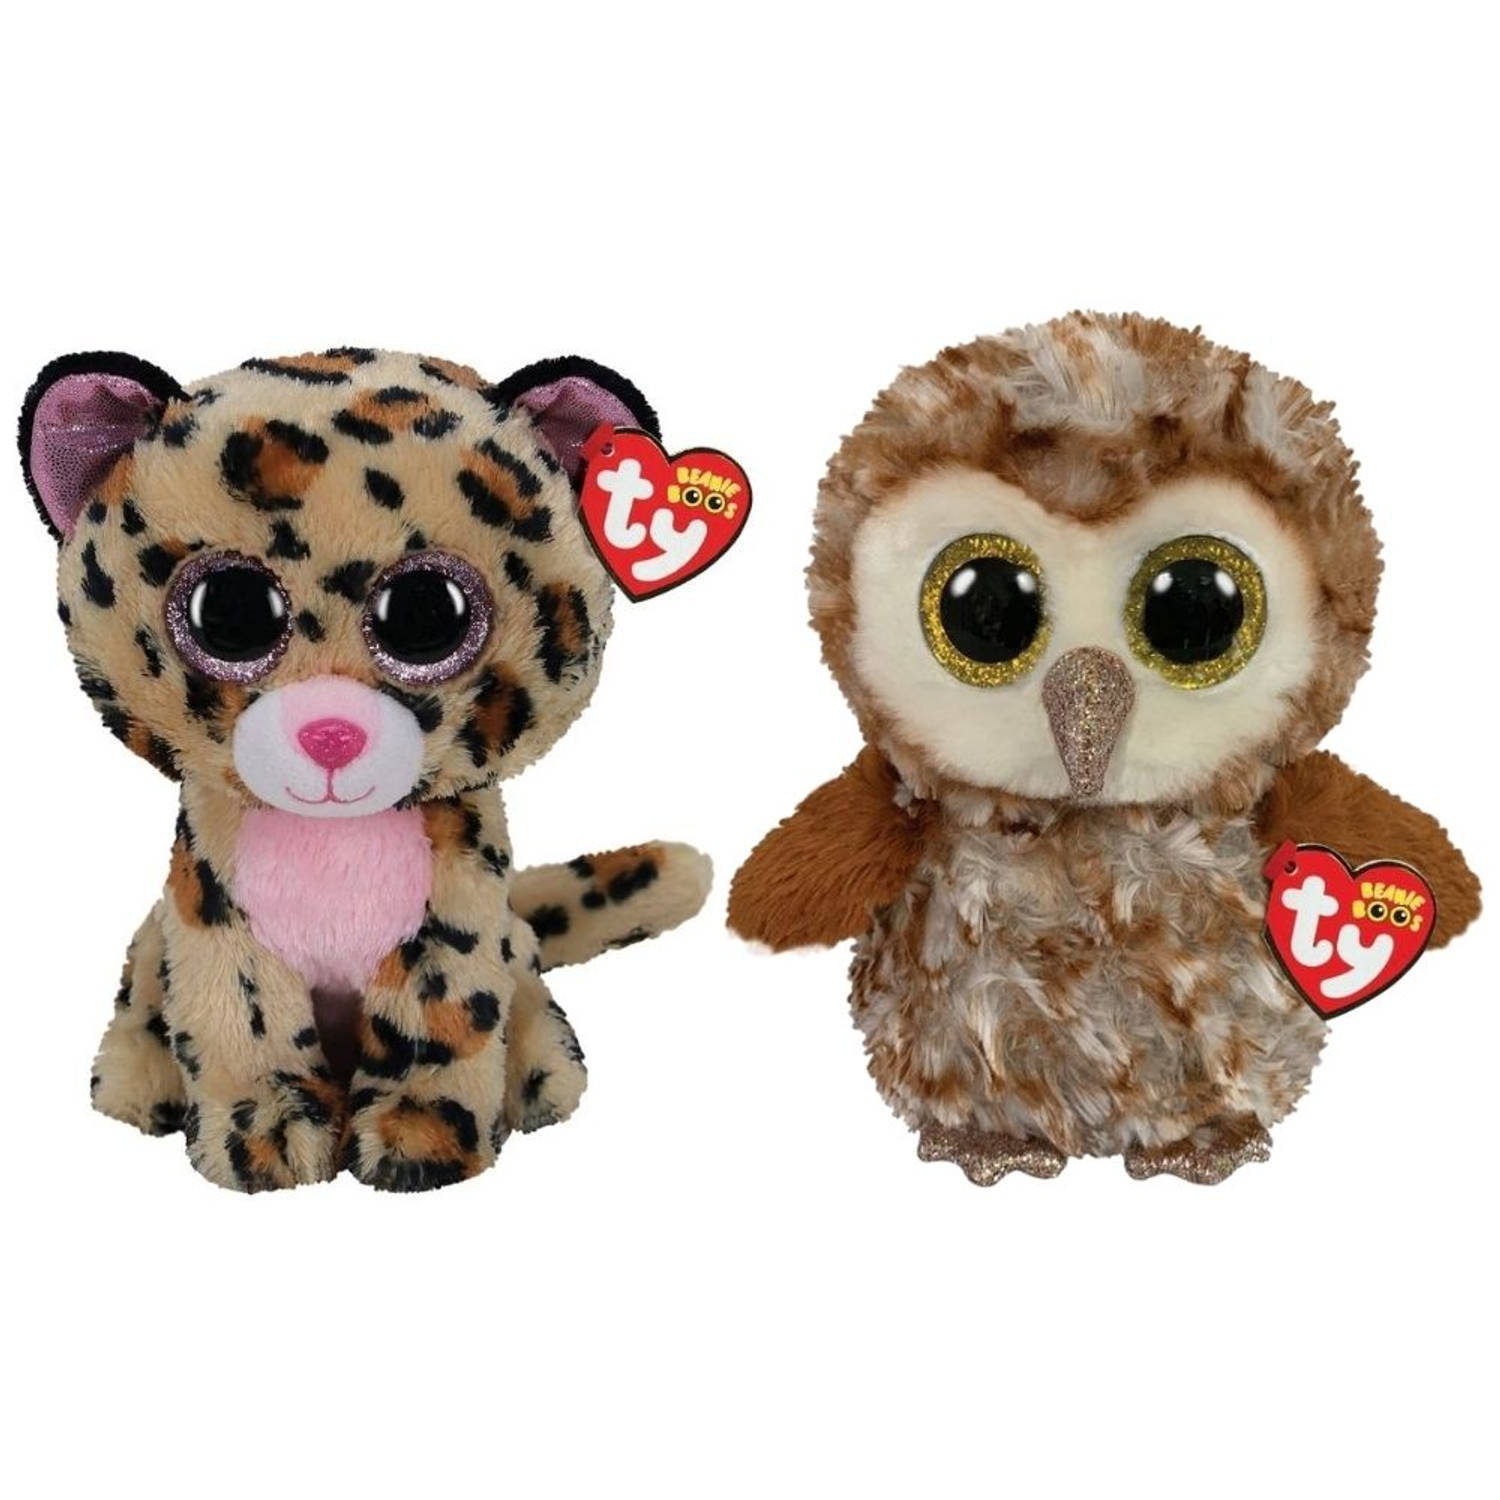 ty - Knuffel - Beanie Buddy - Livvie Leopard & Percy Owl